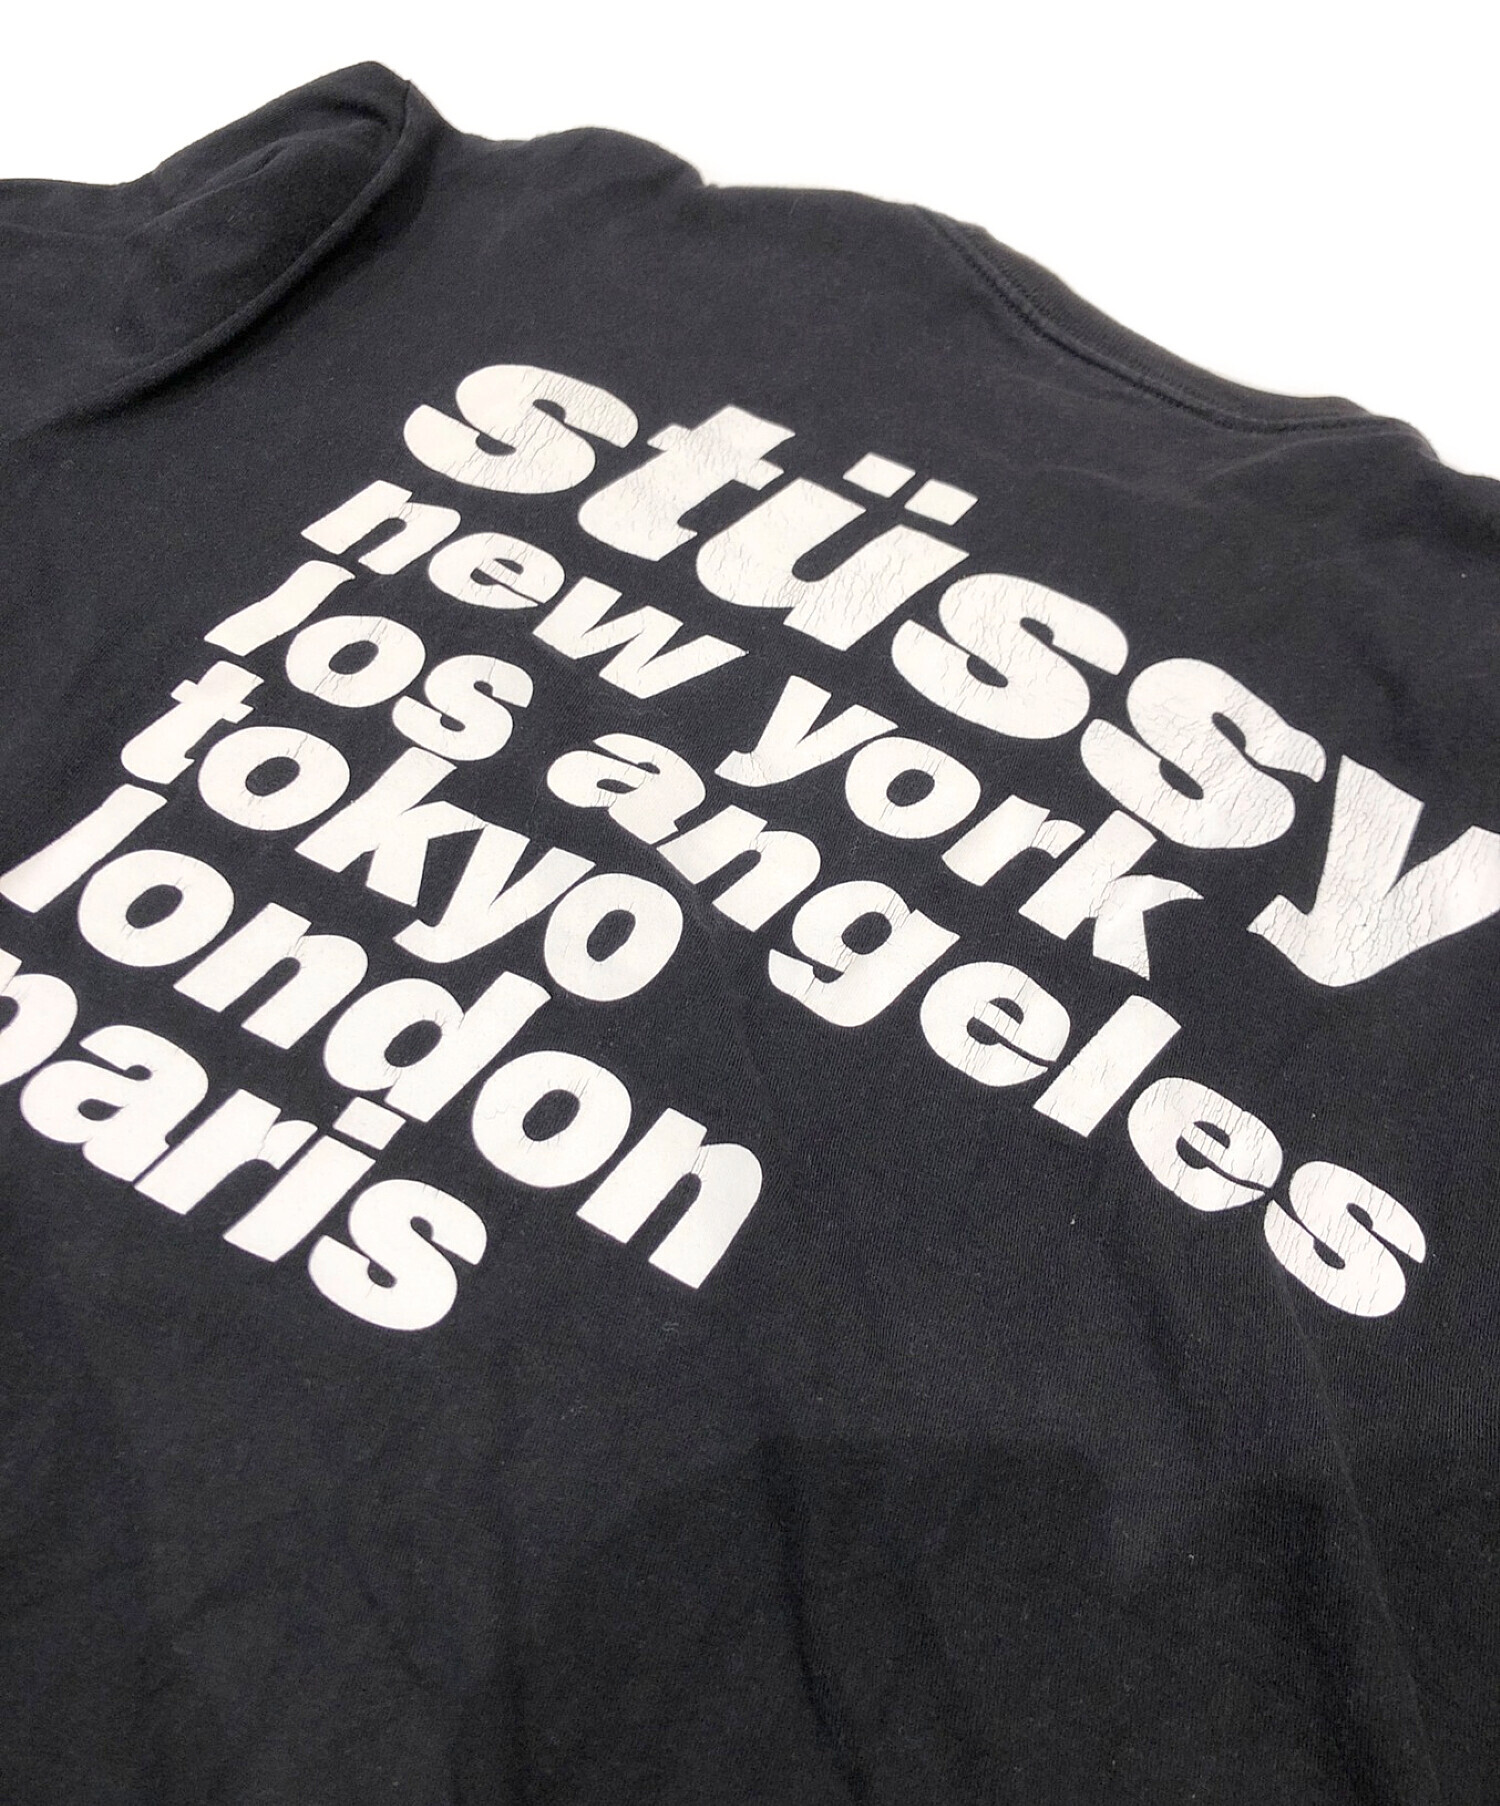 stussy (ステューシー) ワールドツアーTシャツ ブラック サイズ:XL